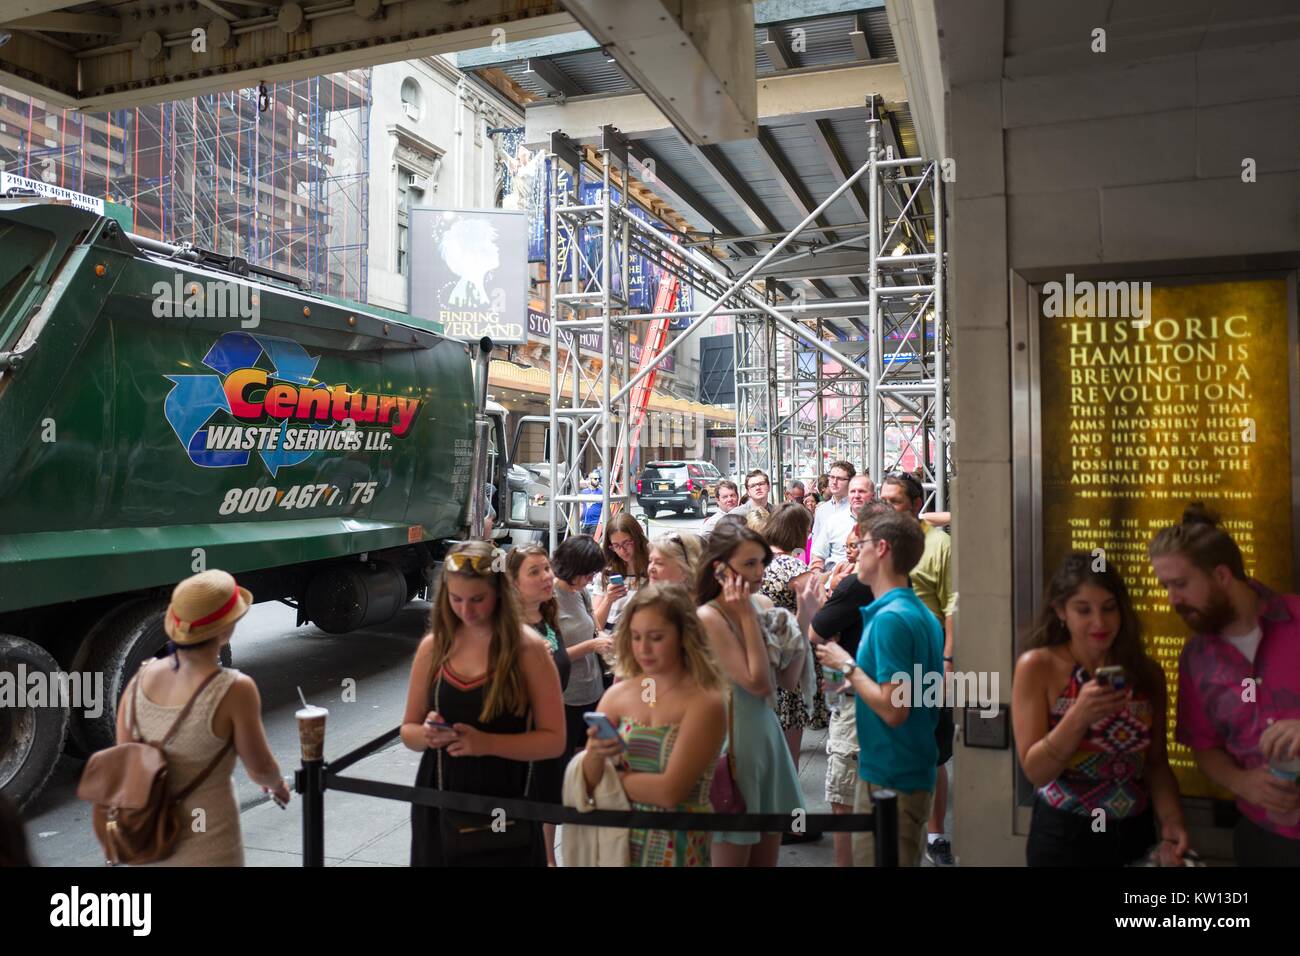 Avant un spectacle de la comédie musicale Hamilton deux jours avant créateur Lin Manuel Miranda son départ de la série, fans attendre en ligne et préparez-vous à entrer dans la Richard Rodgers theatre, New York City, New York, 7 juillet 2016. Banque D'Images